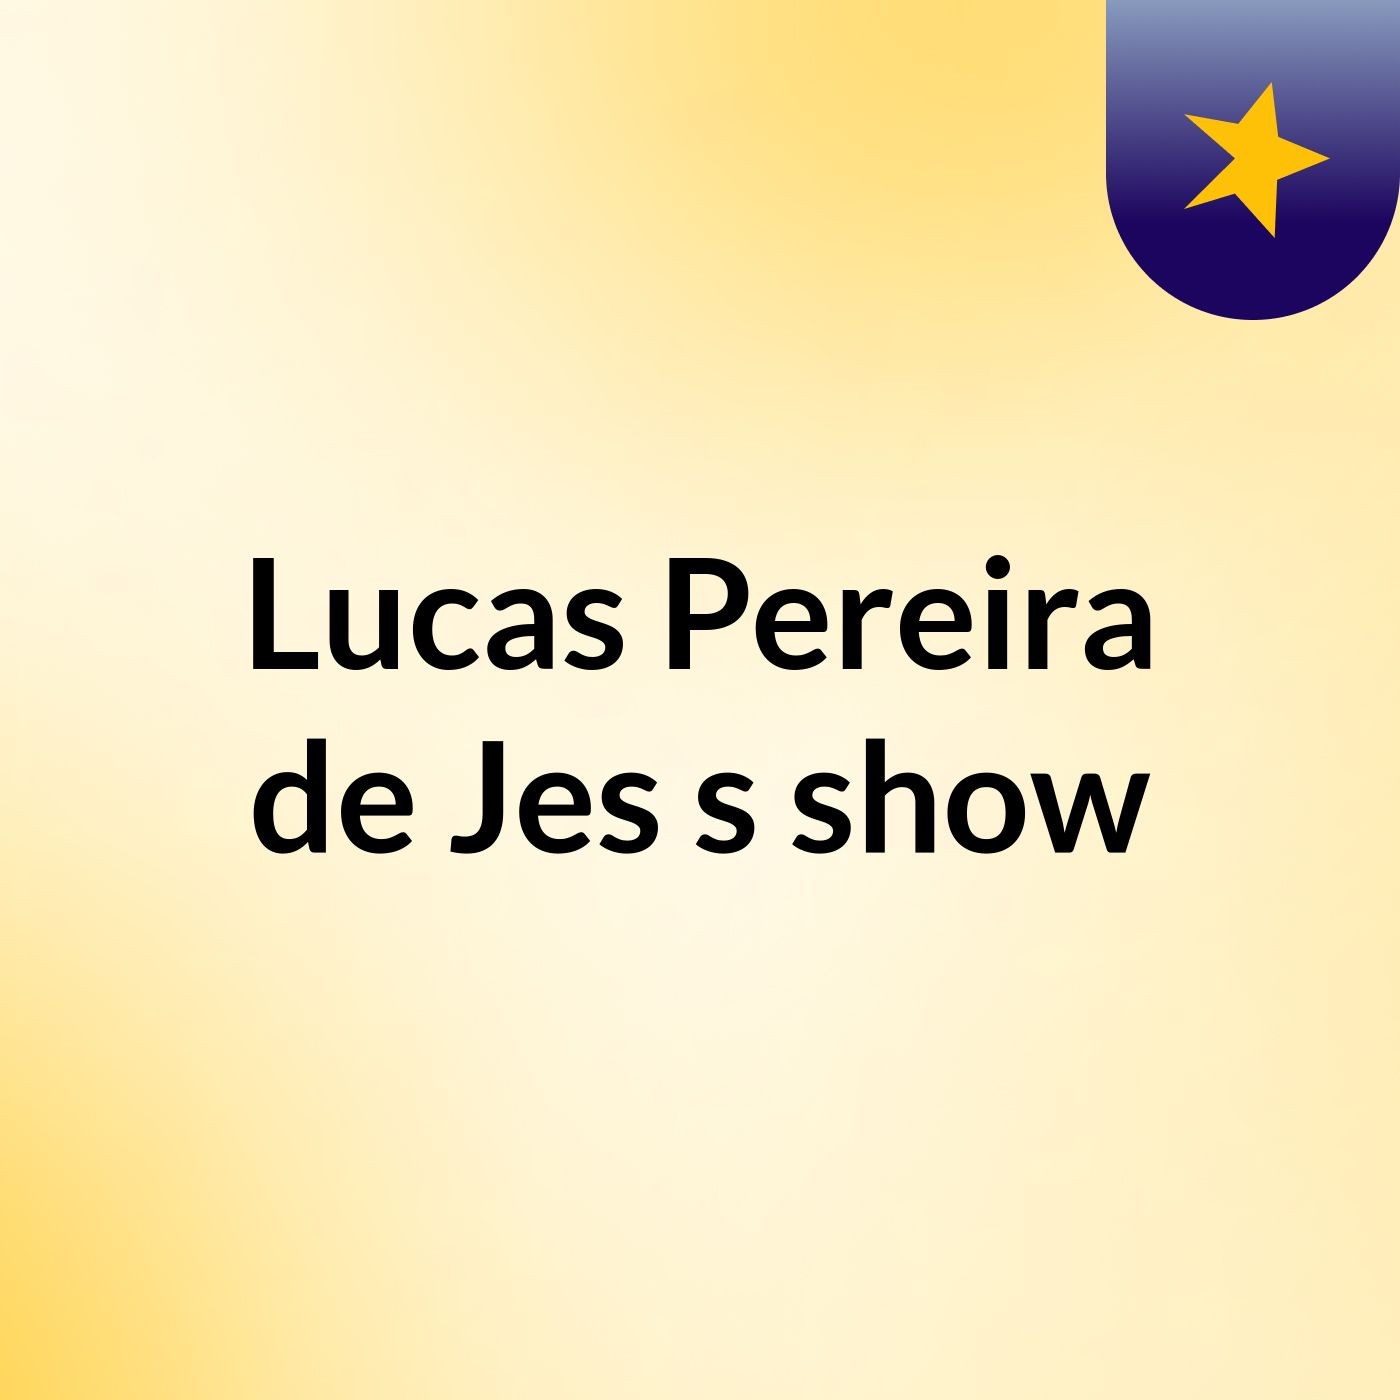 Lucas Pereira de Jes's show